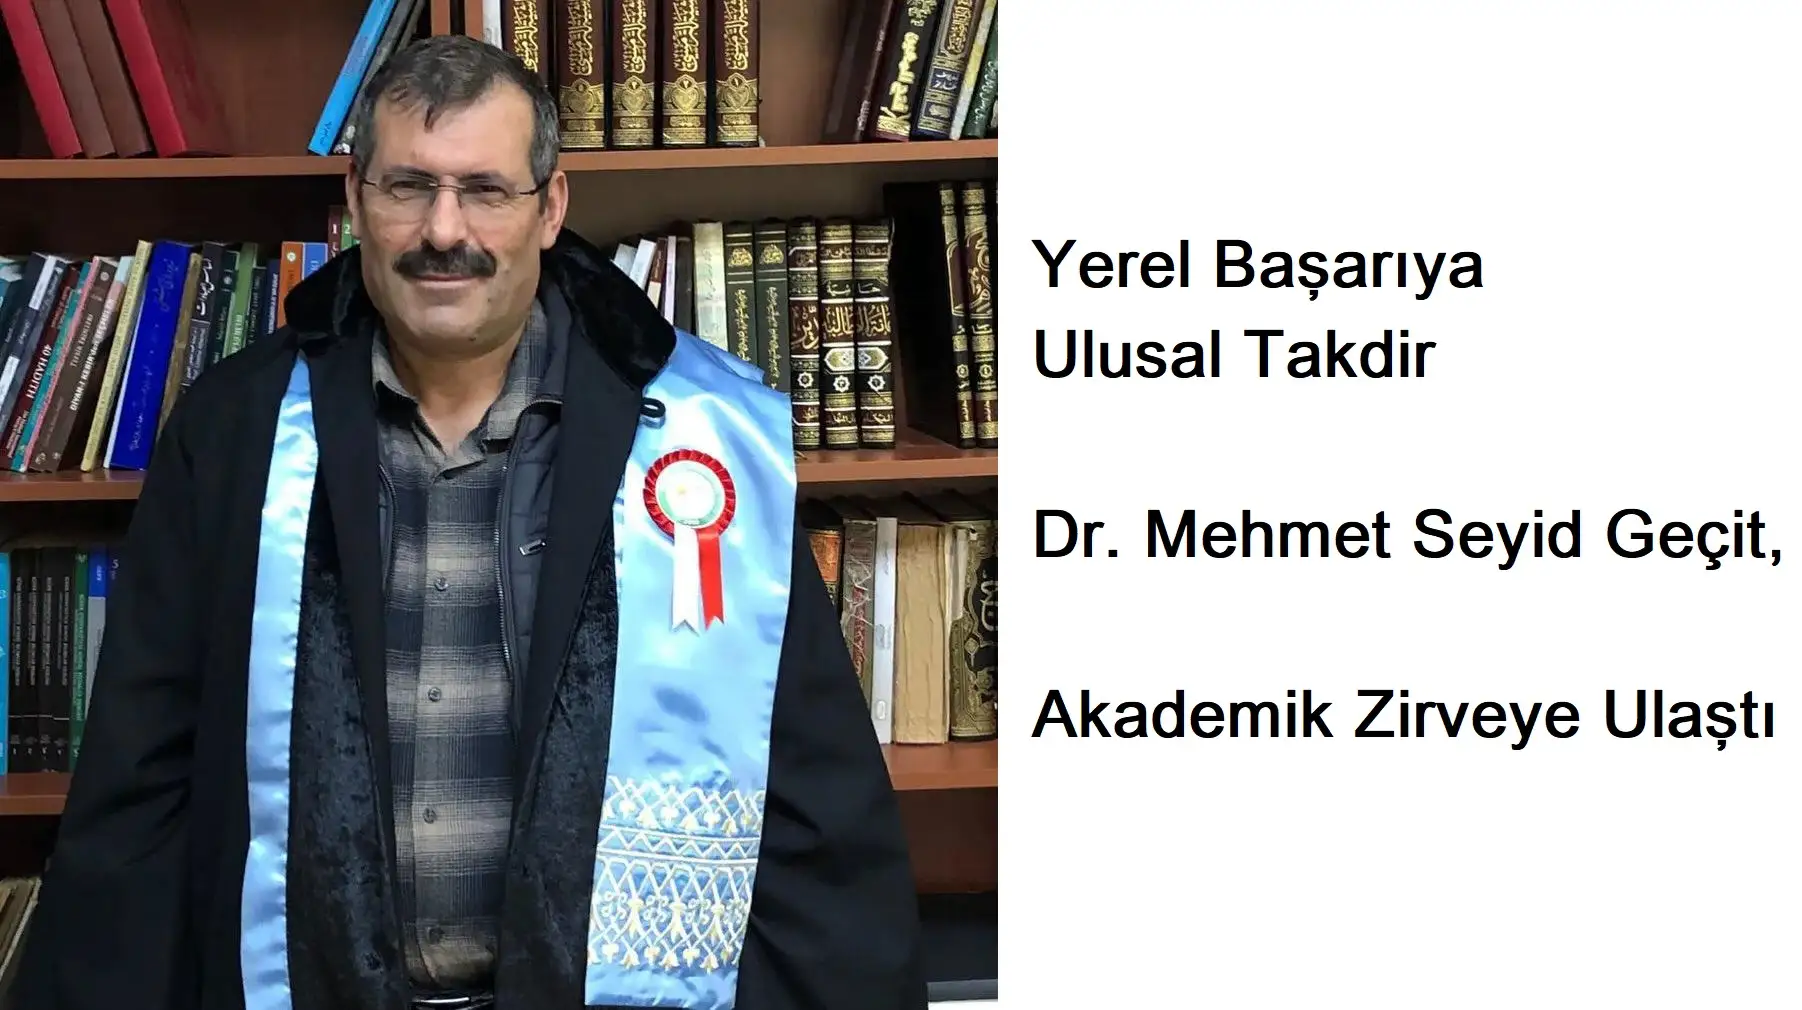 Yerel Başarıya Ulusal Takdir, Dr. Mehmet Seyid Geçit, Akademik Zirveye Ulaştı